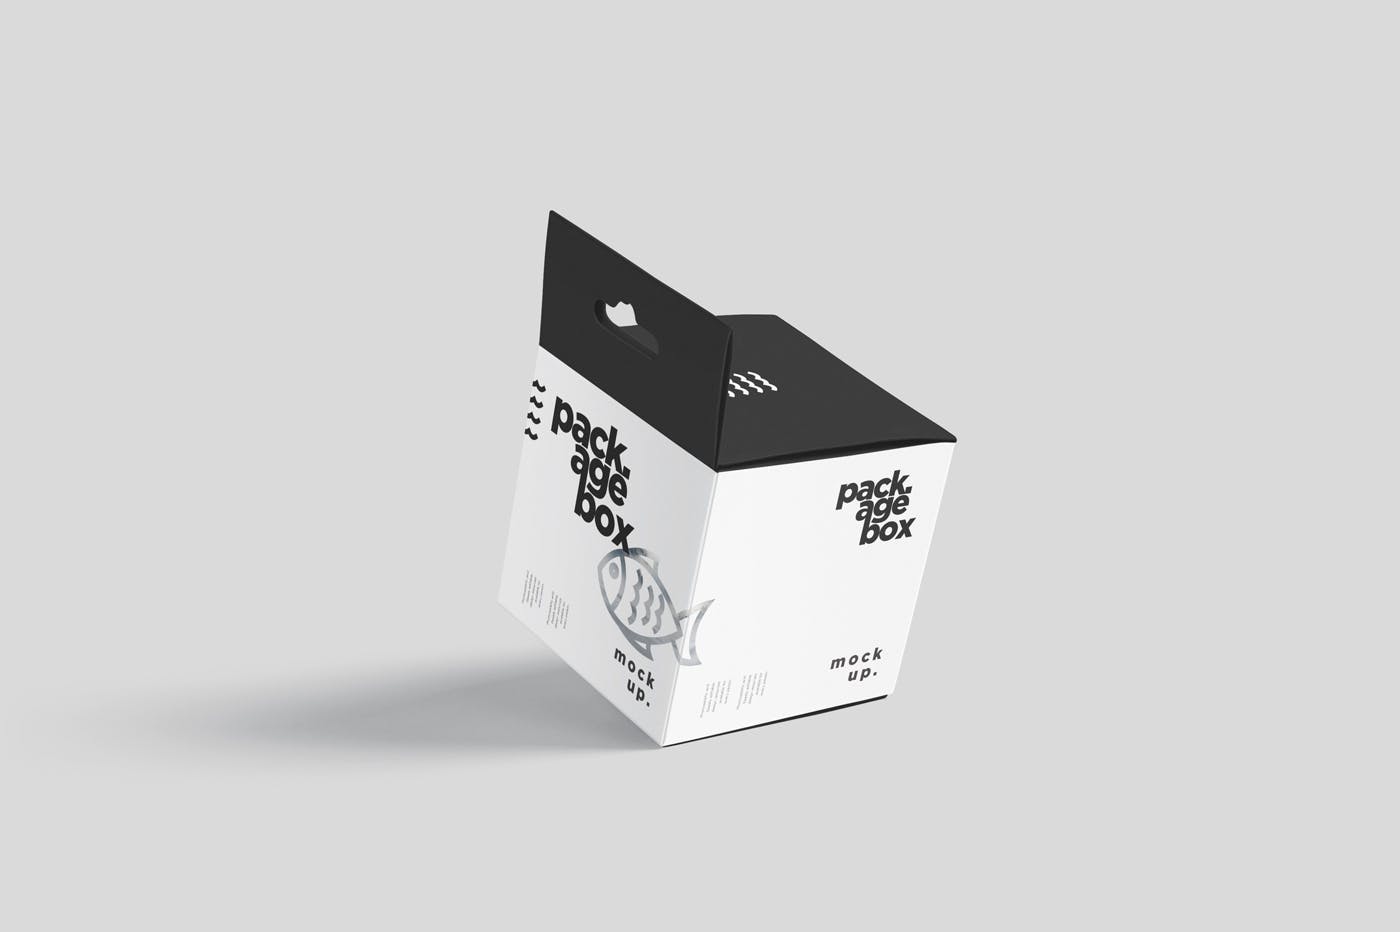 挂耳式方形产品包装盒样机模板 Package Box Mockup Set – Square With Hanger插图2